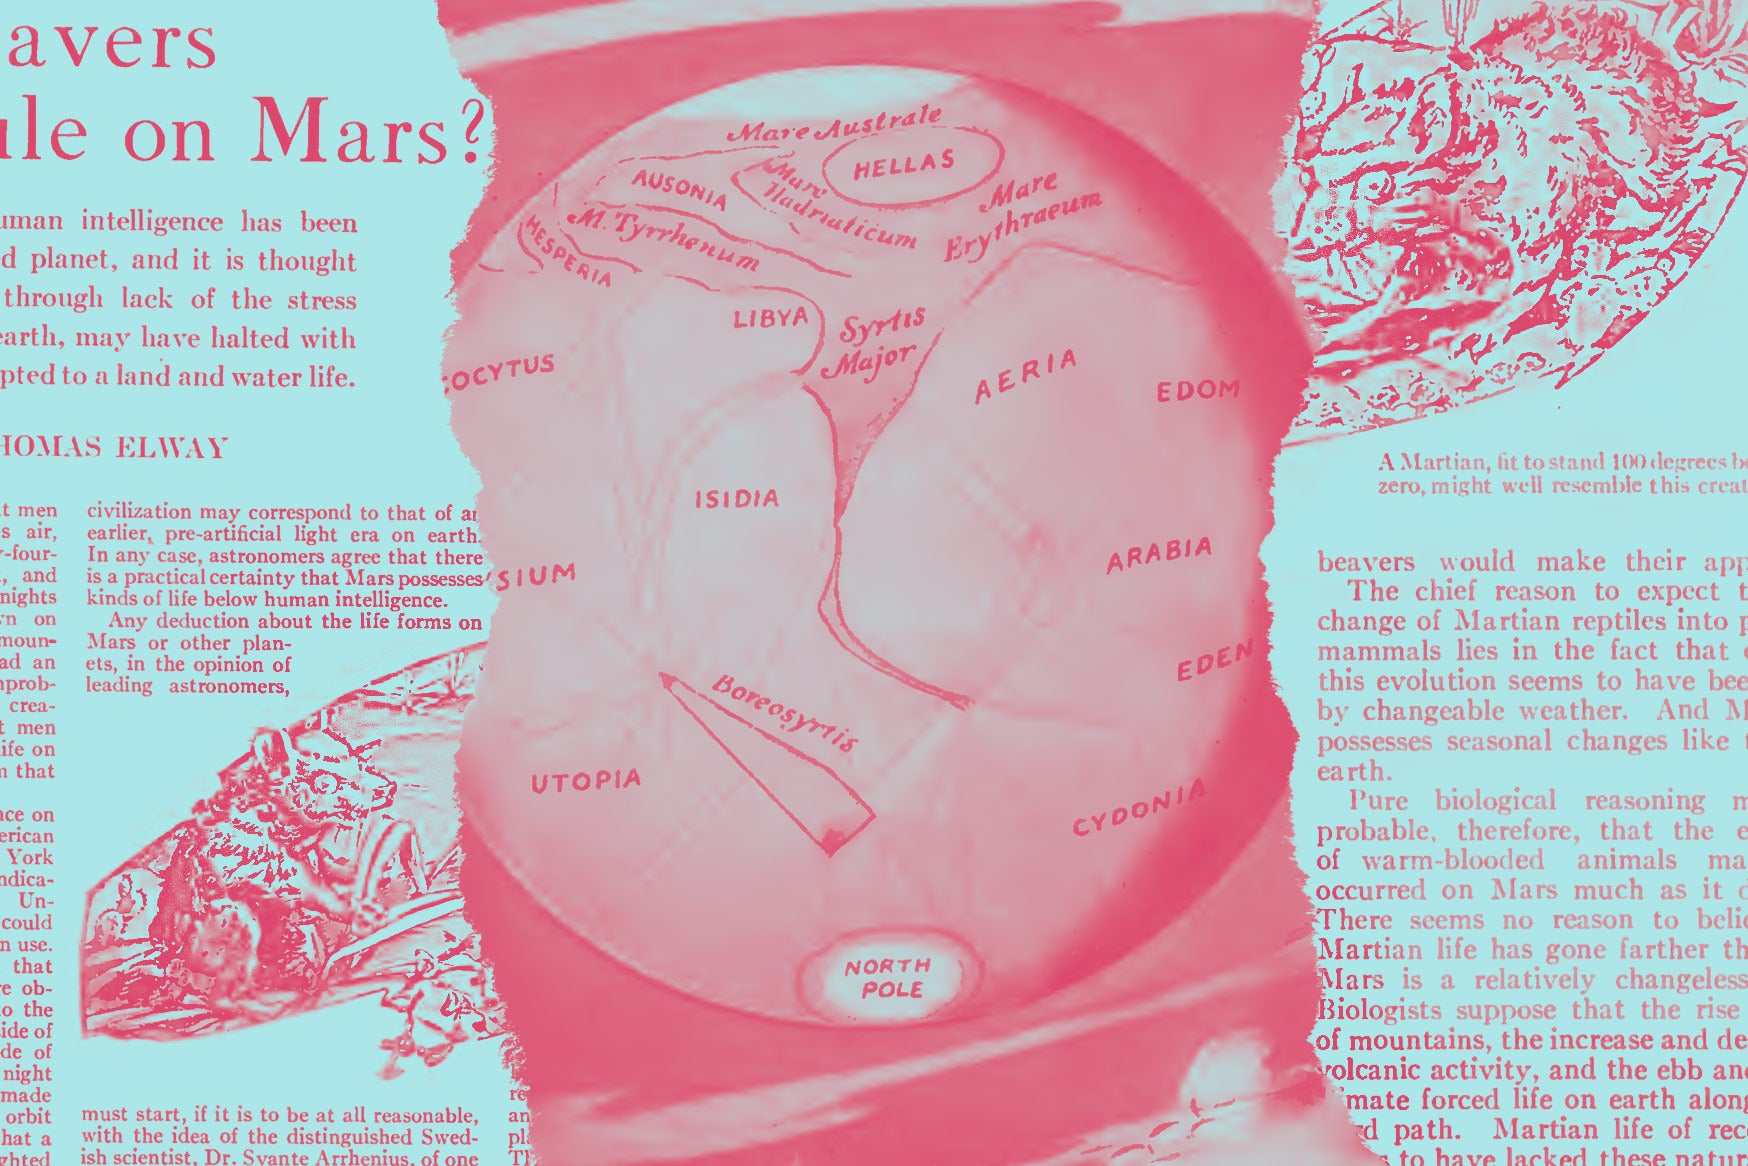 De los archivos: ‘¿Gobiernan los castores en Marte?’ de Elway.